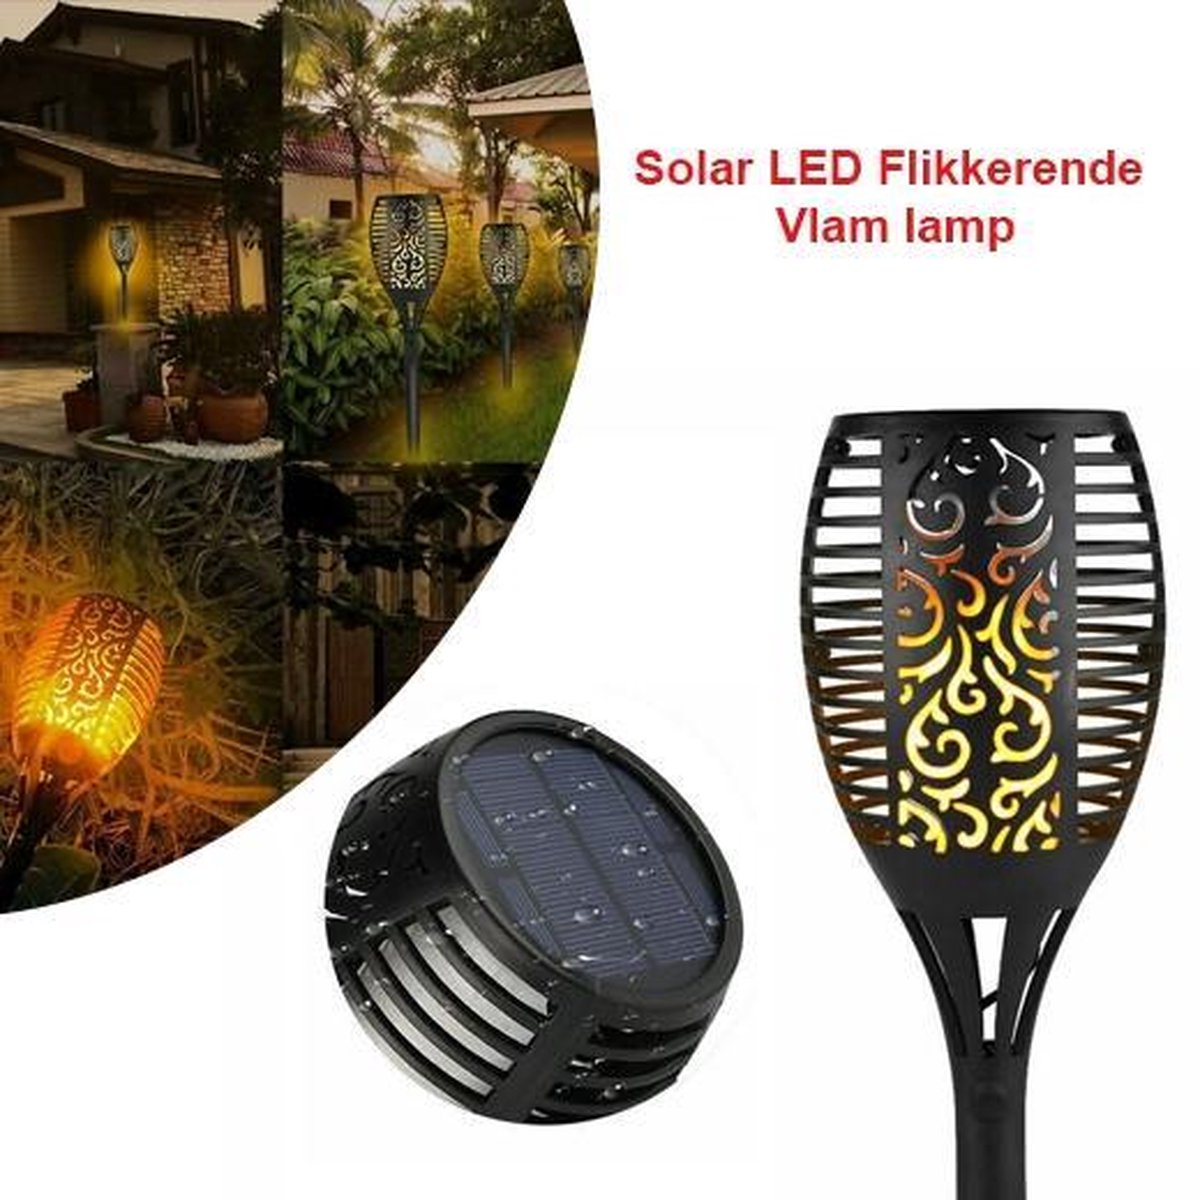 2-Stuks LED Flikkerende Vlam Lamp voor Tuin | bol.com